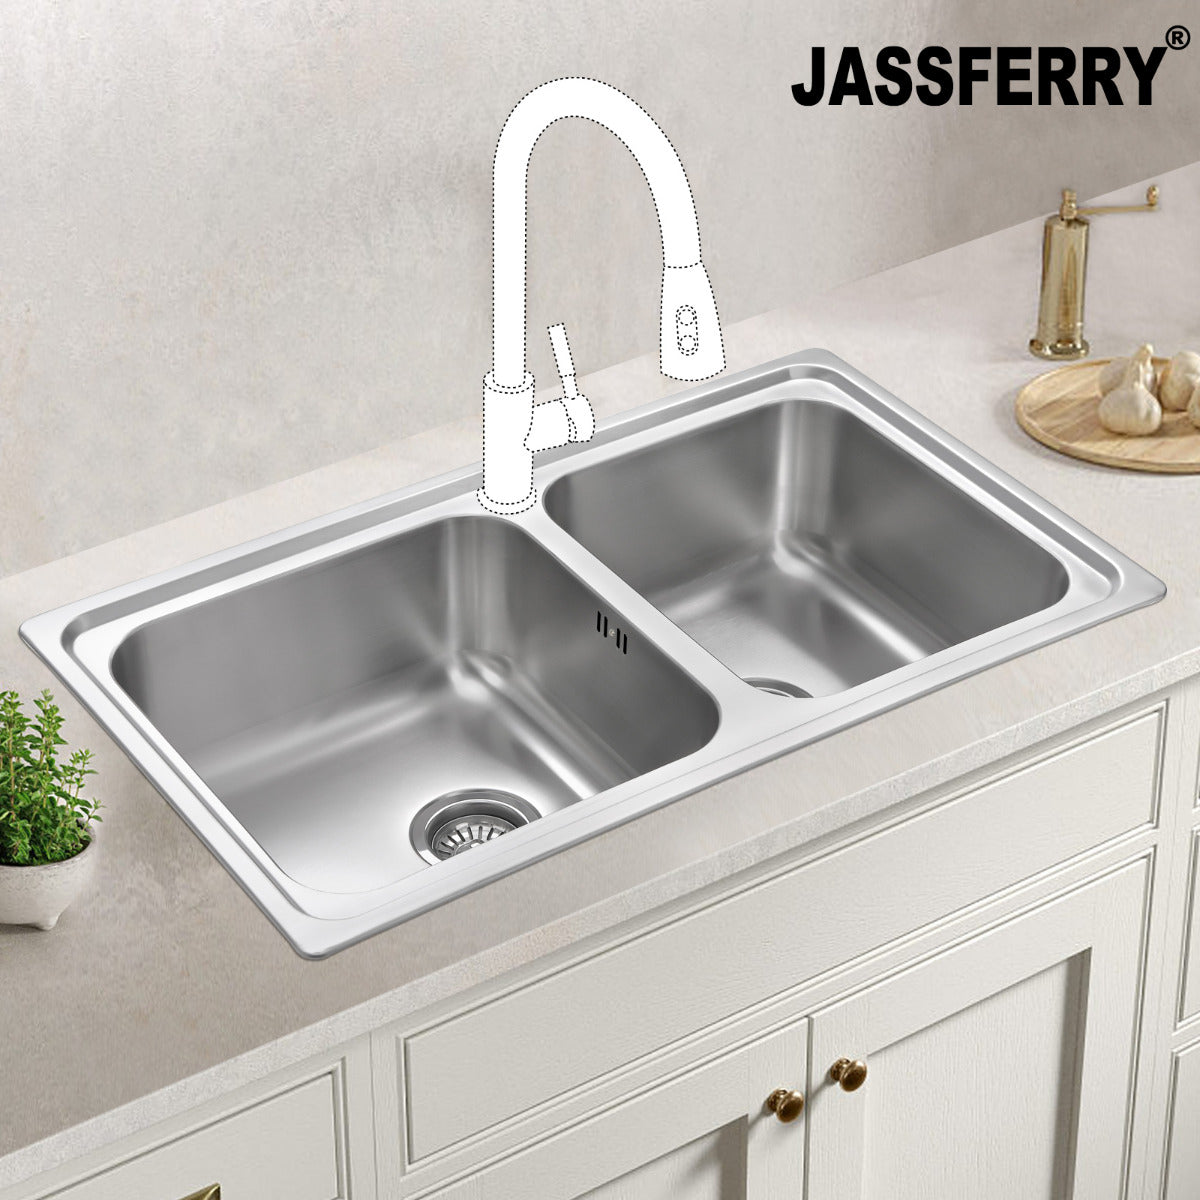 JassferryJASSFERRY Stainless Steel Kitchen Sink Square Bowl with Strainer WasteKitchen Sinks